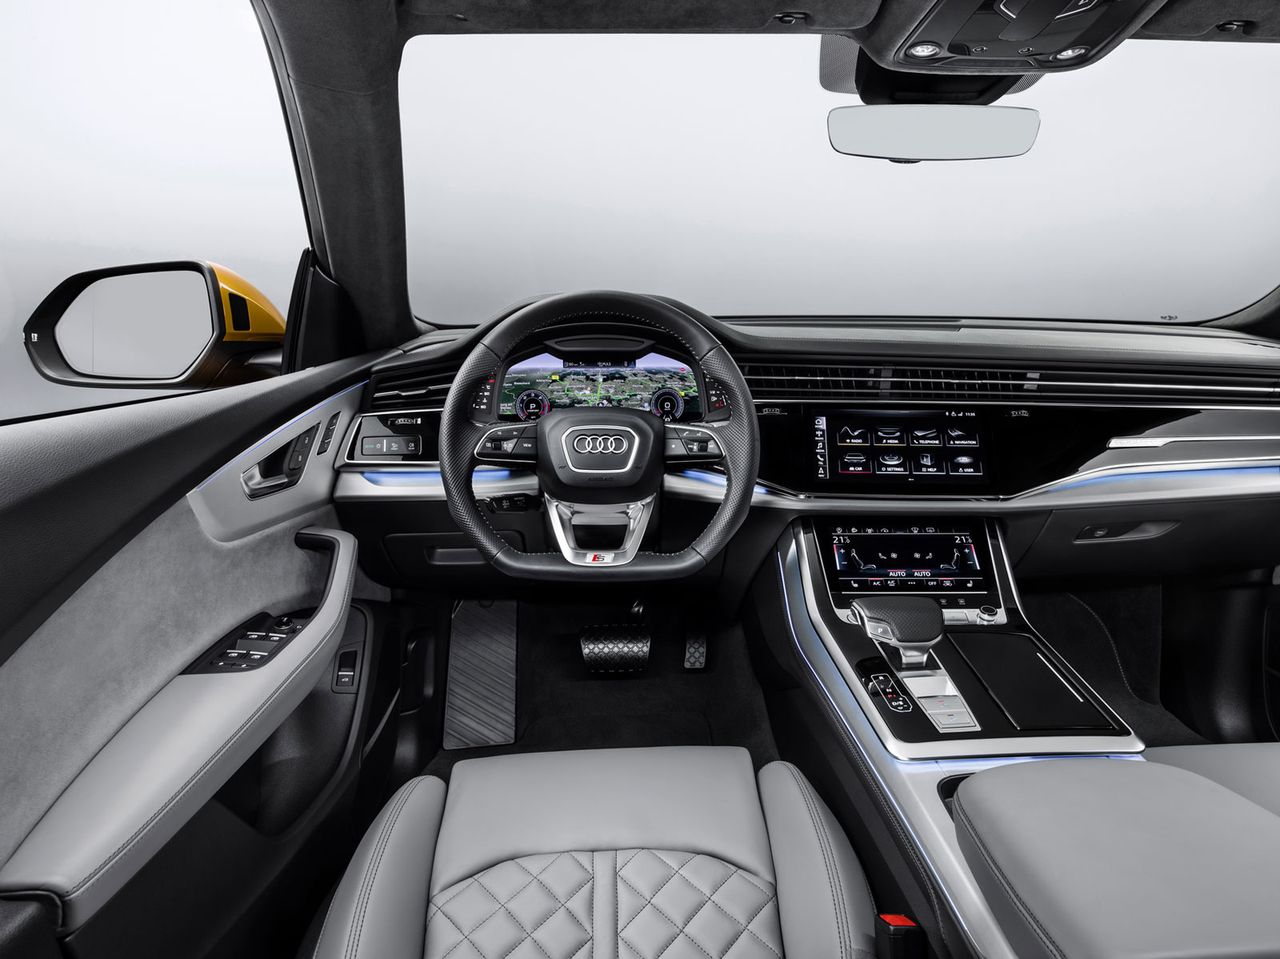 Audi zamierza całkowicie zrezygnować z tradycyjnych pokręteł i przycisków